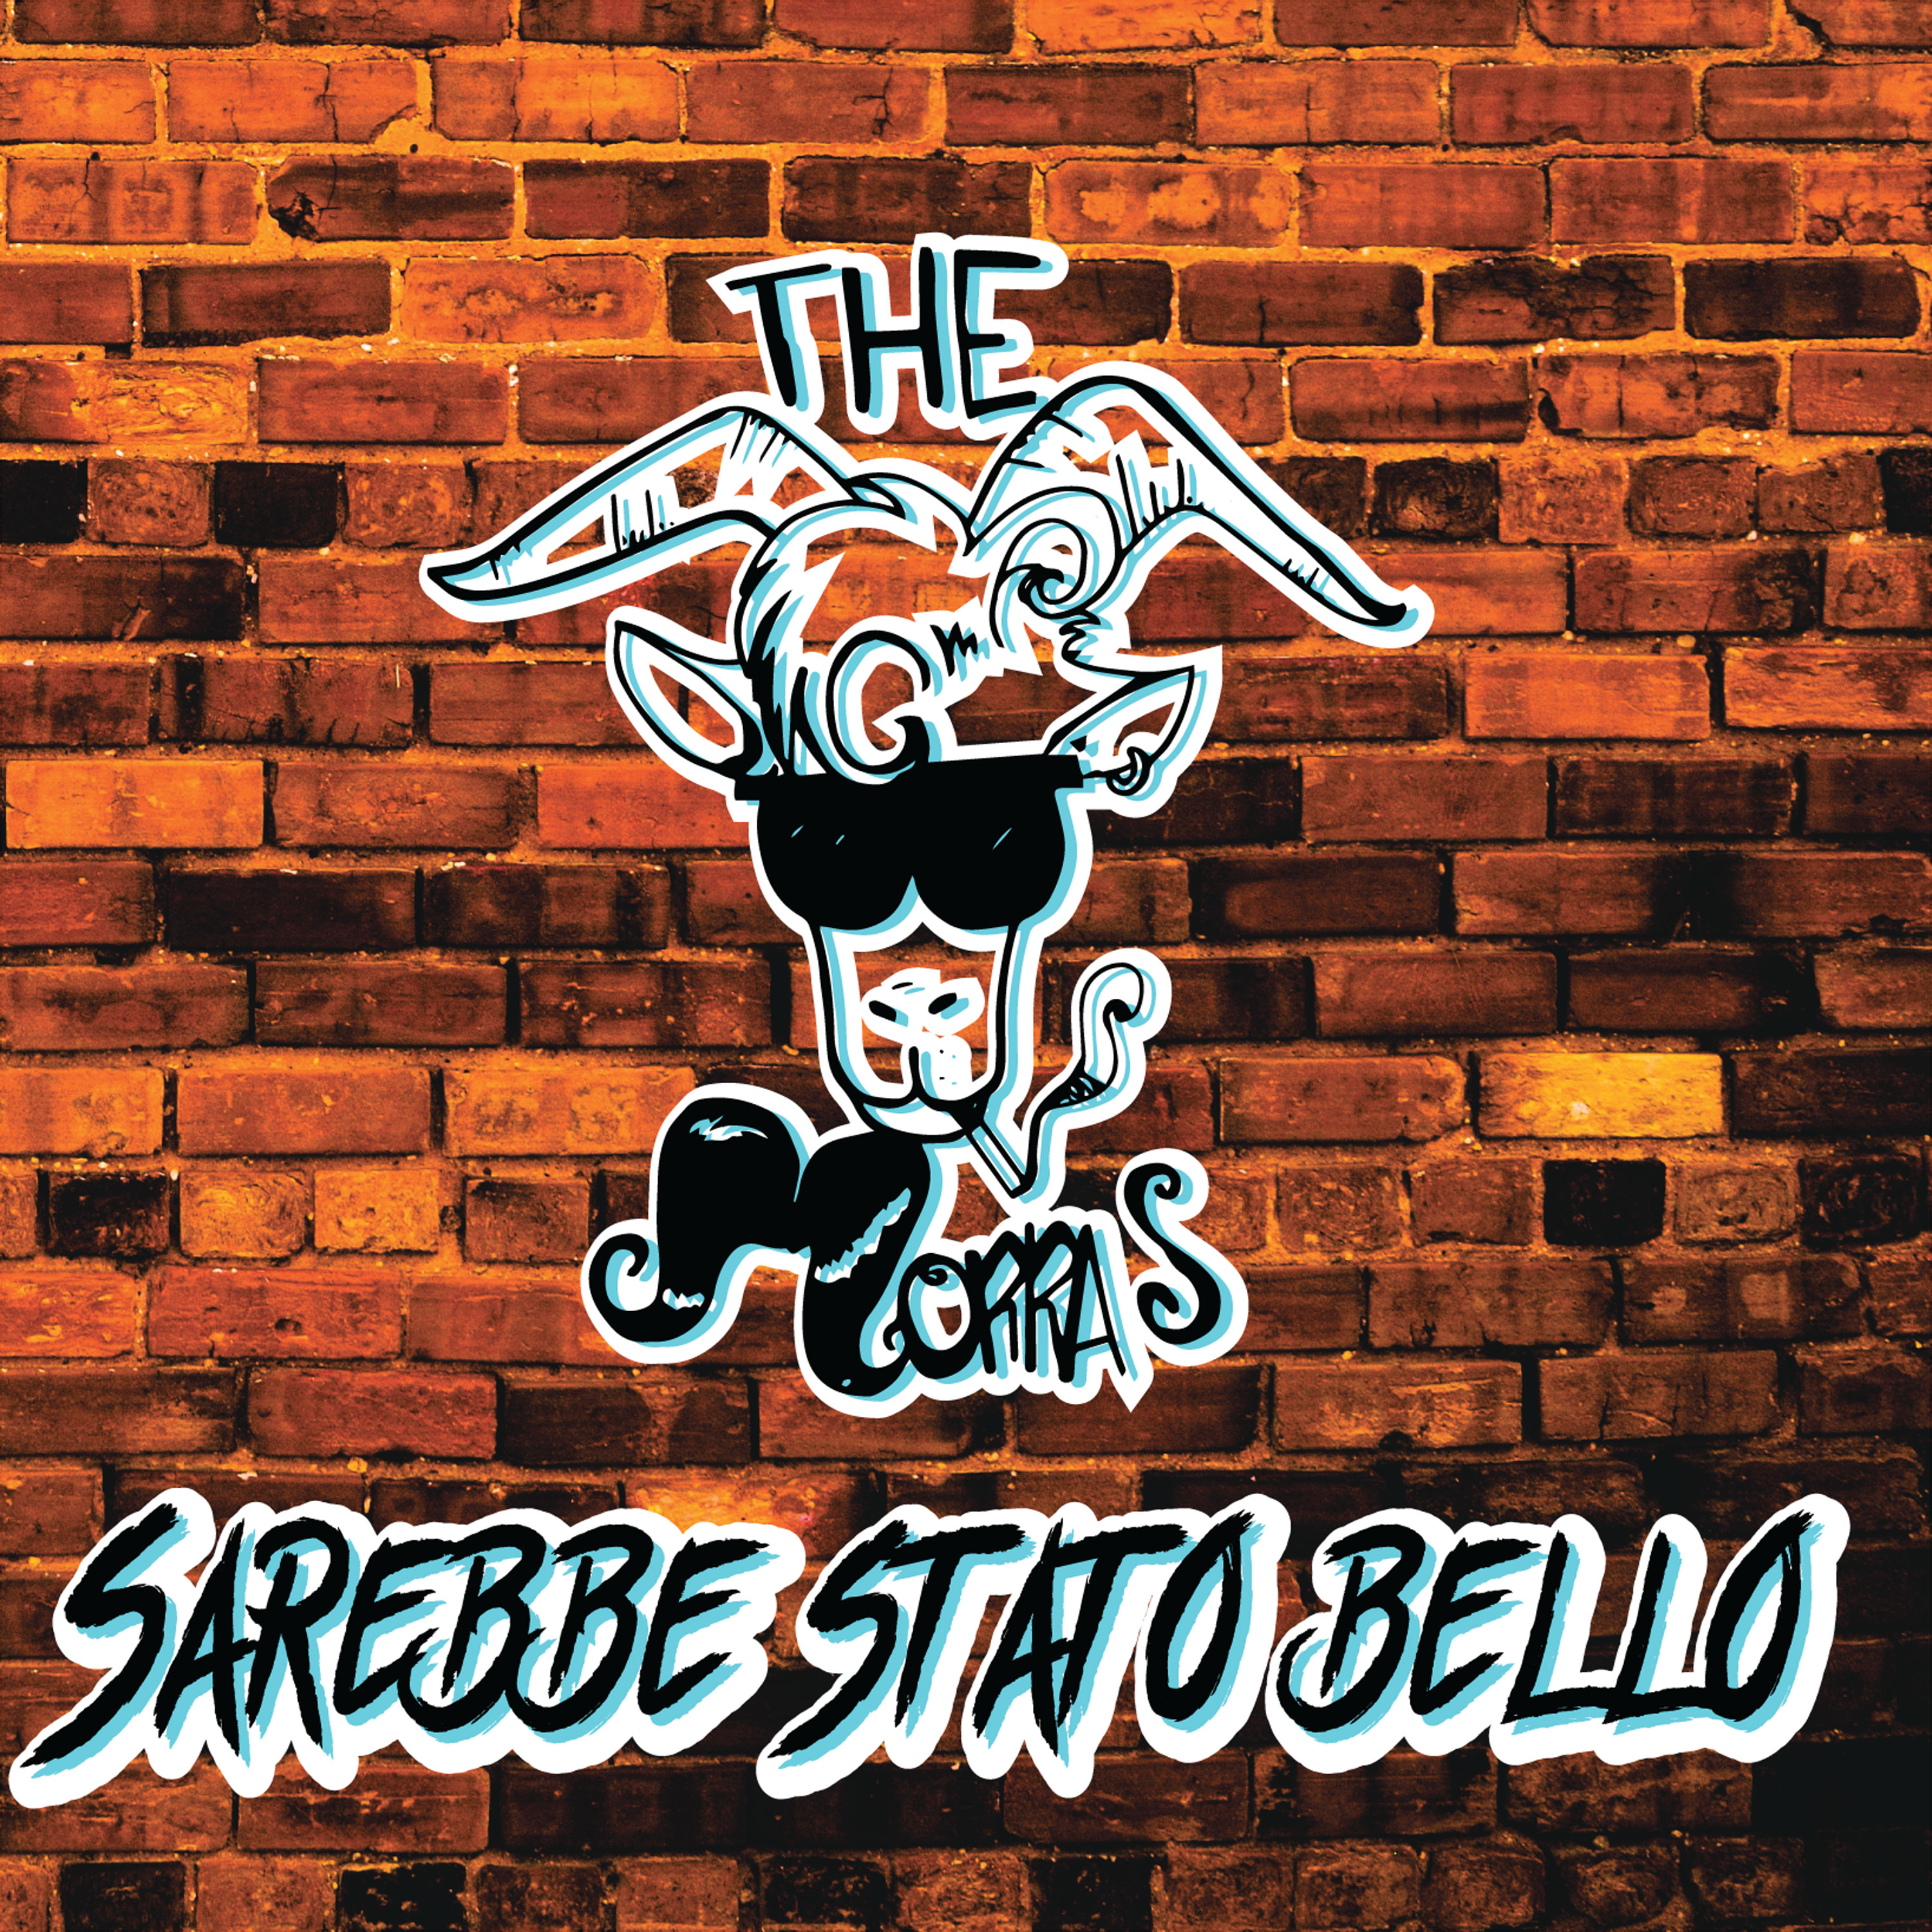 SAREBBE STATO BELLO è l’album d’esordio dei THE MORRAS